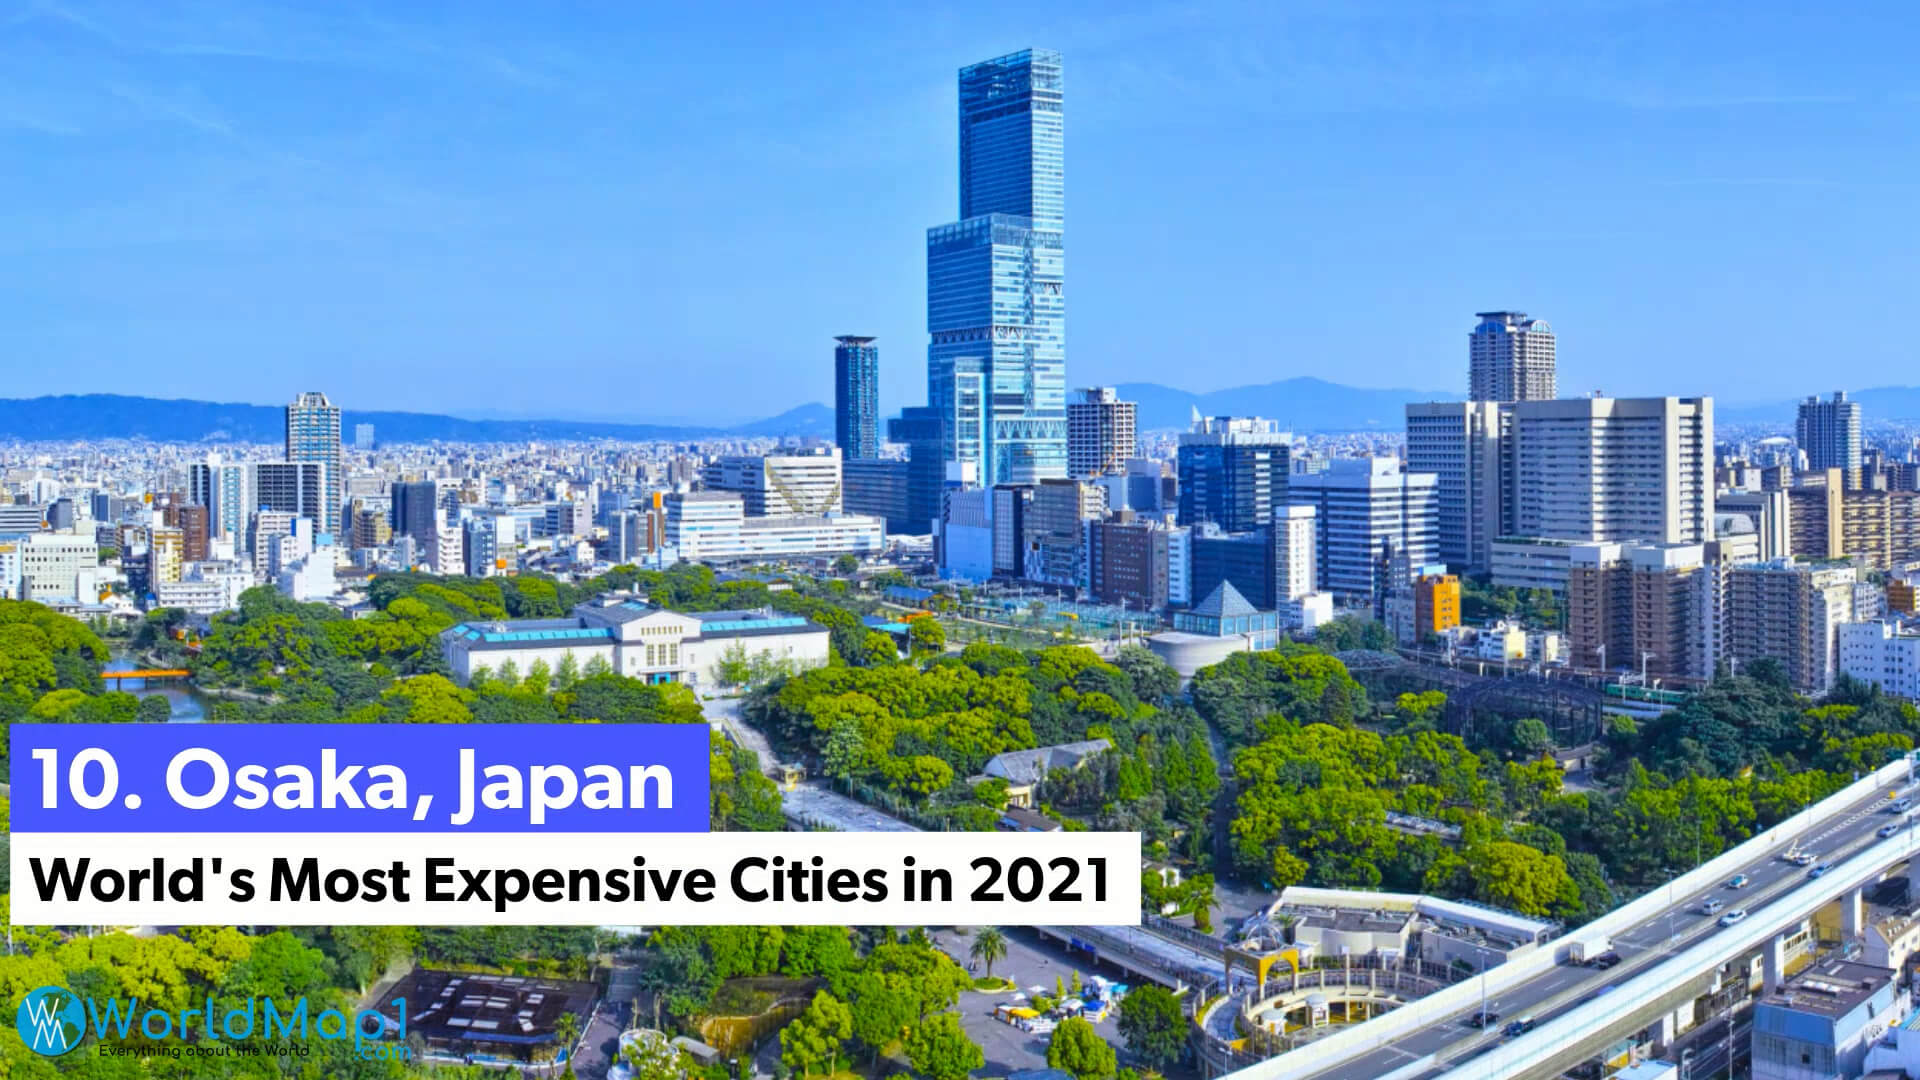 Les villes les plus chères du monde - Osaka, Japon